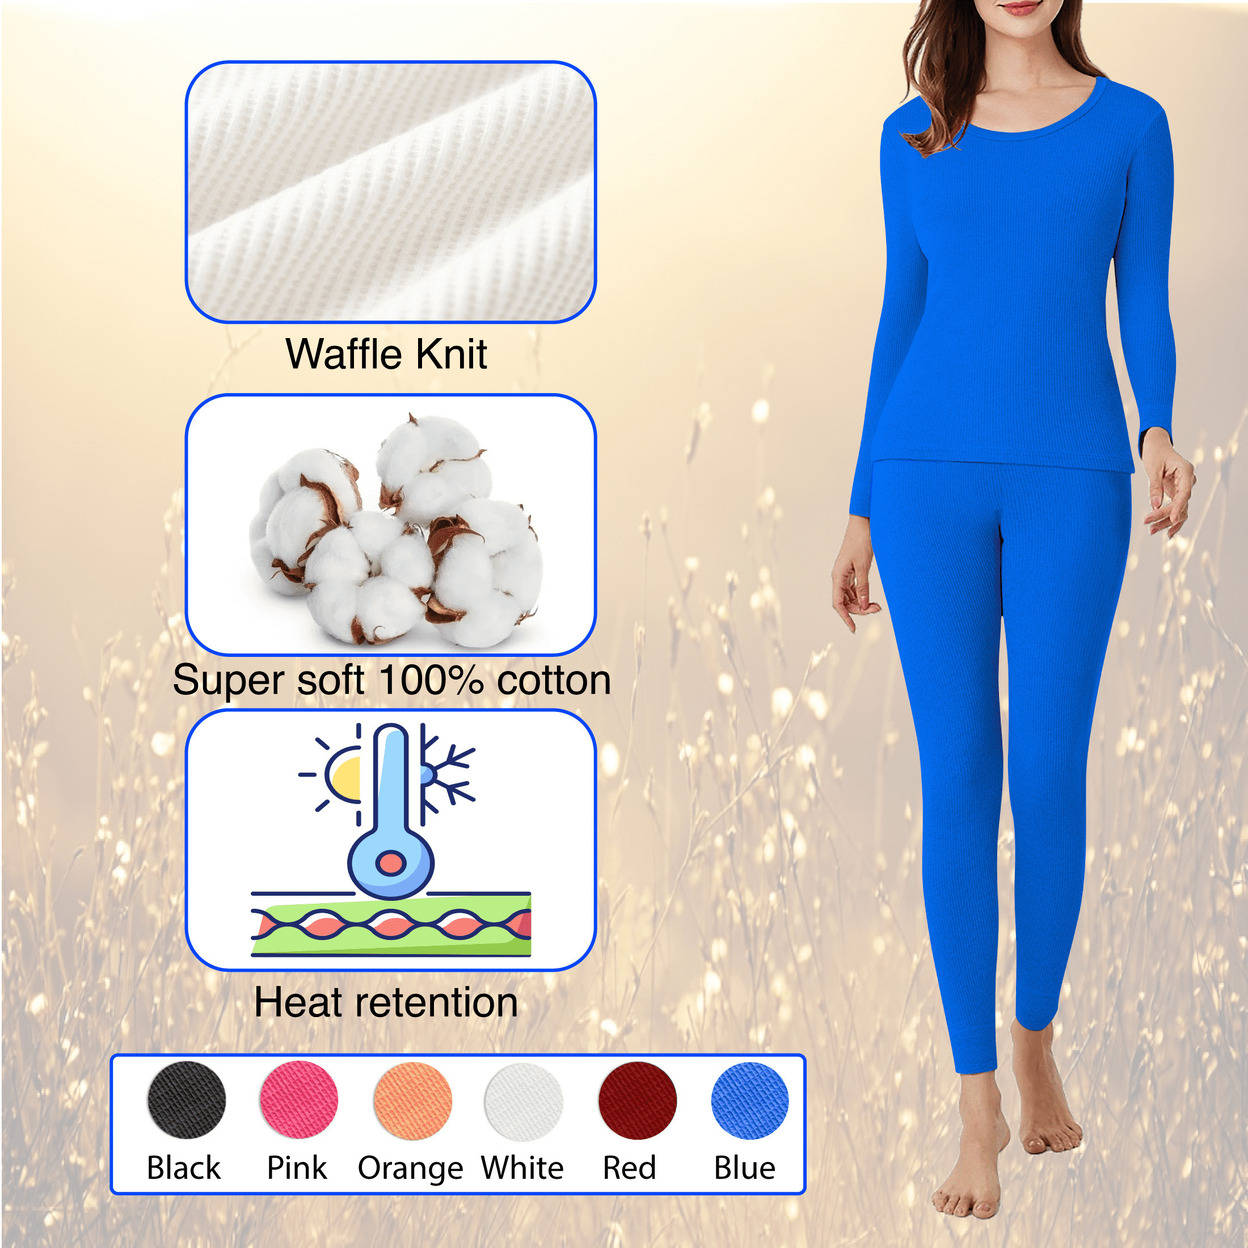 Multi-Set: Women's Winter Warm Ultra Soft Cotton Waffle Knit Thermal Sets - 1-set, Large